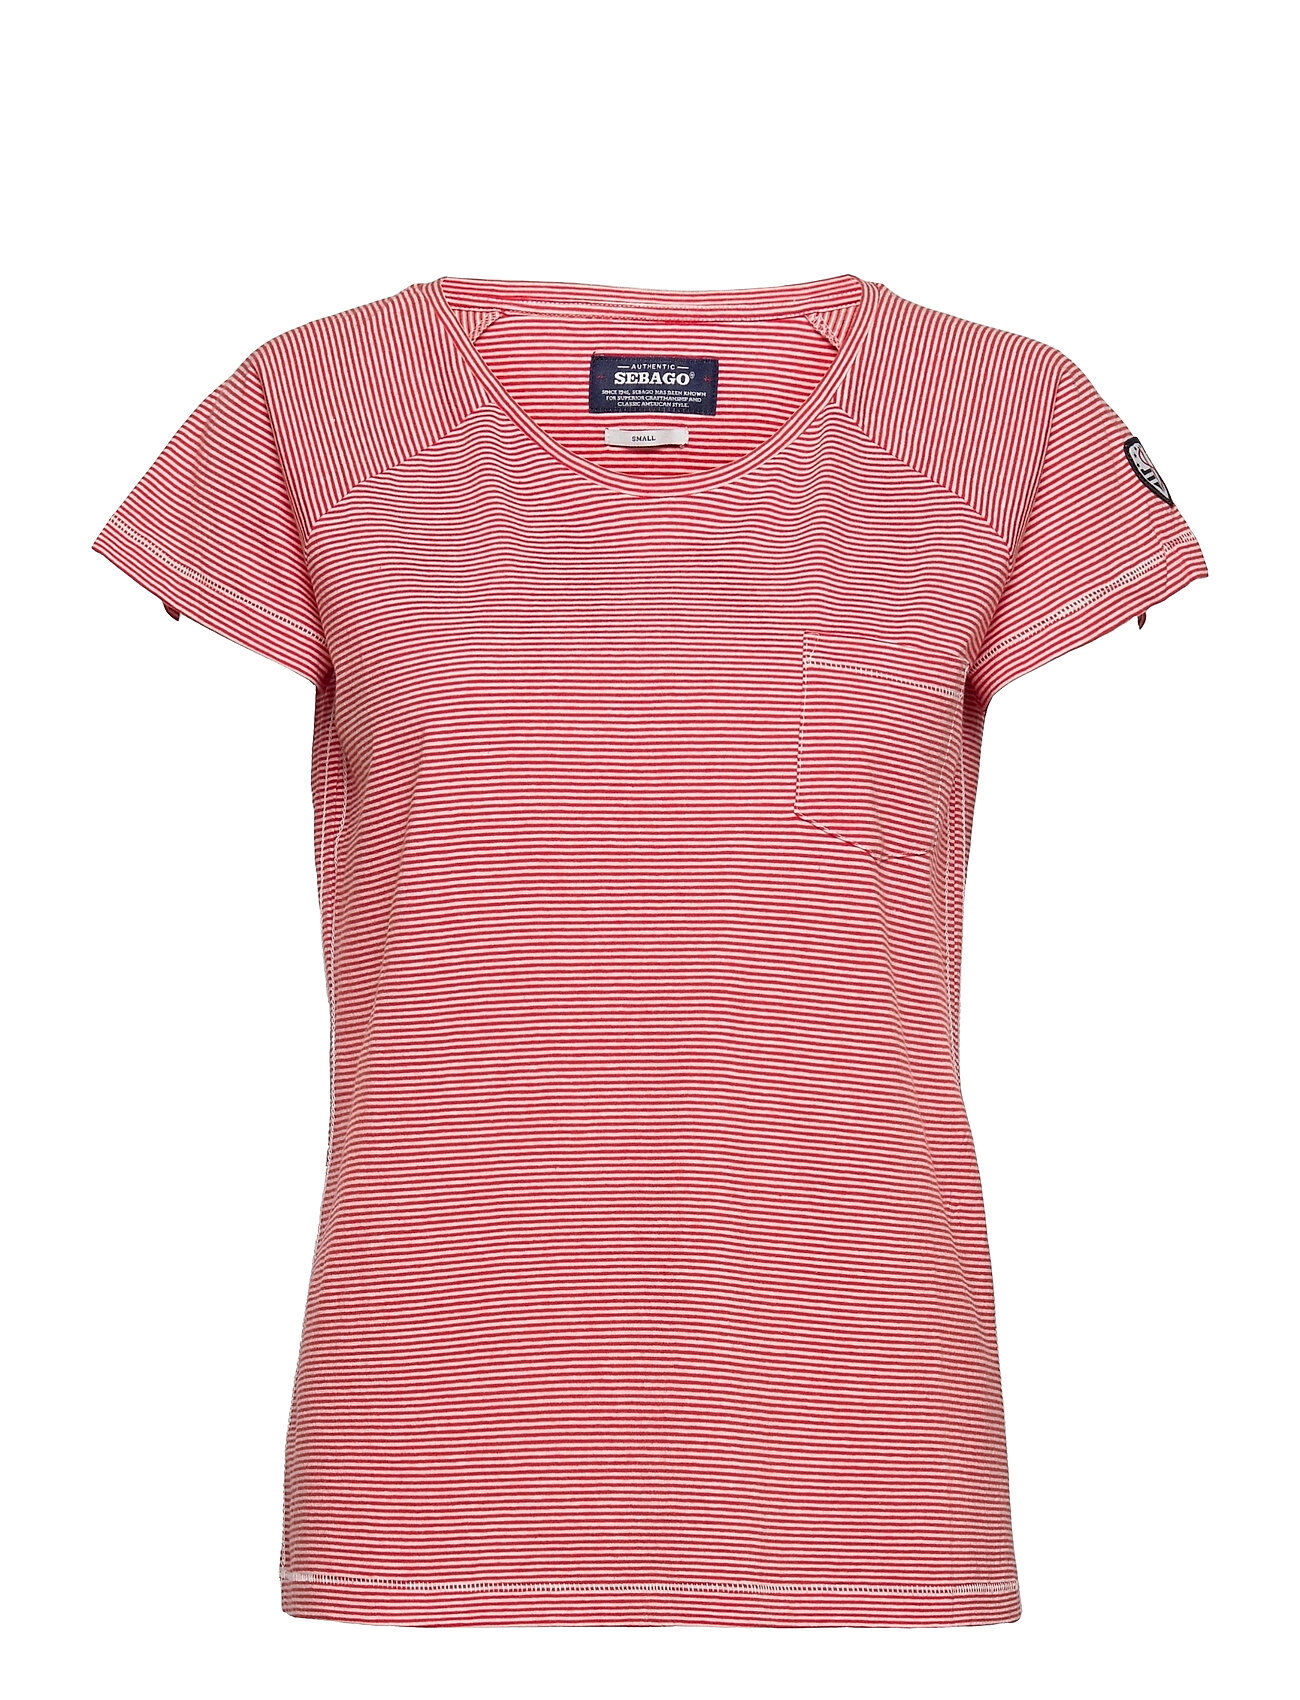 Sebago Dks Linen Jersey Top T-shirts & Tops Short-sleeved Rosa Sebago